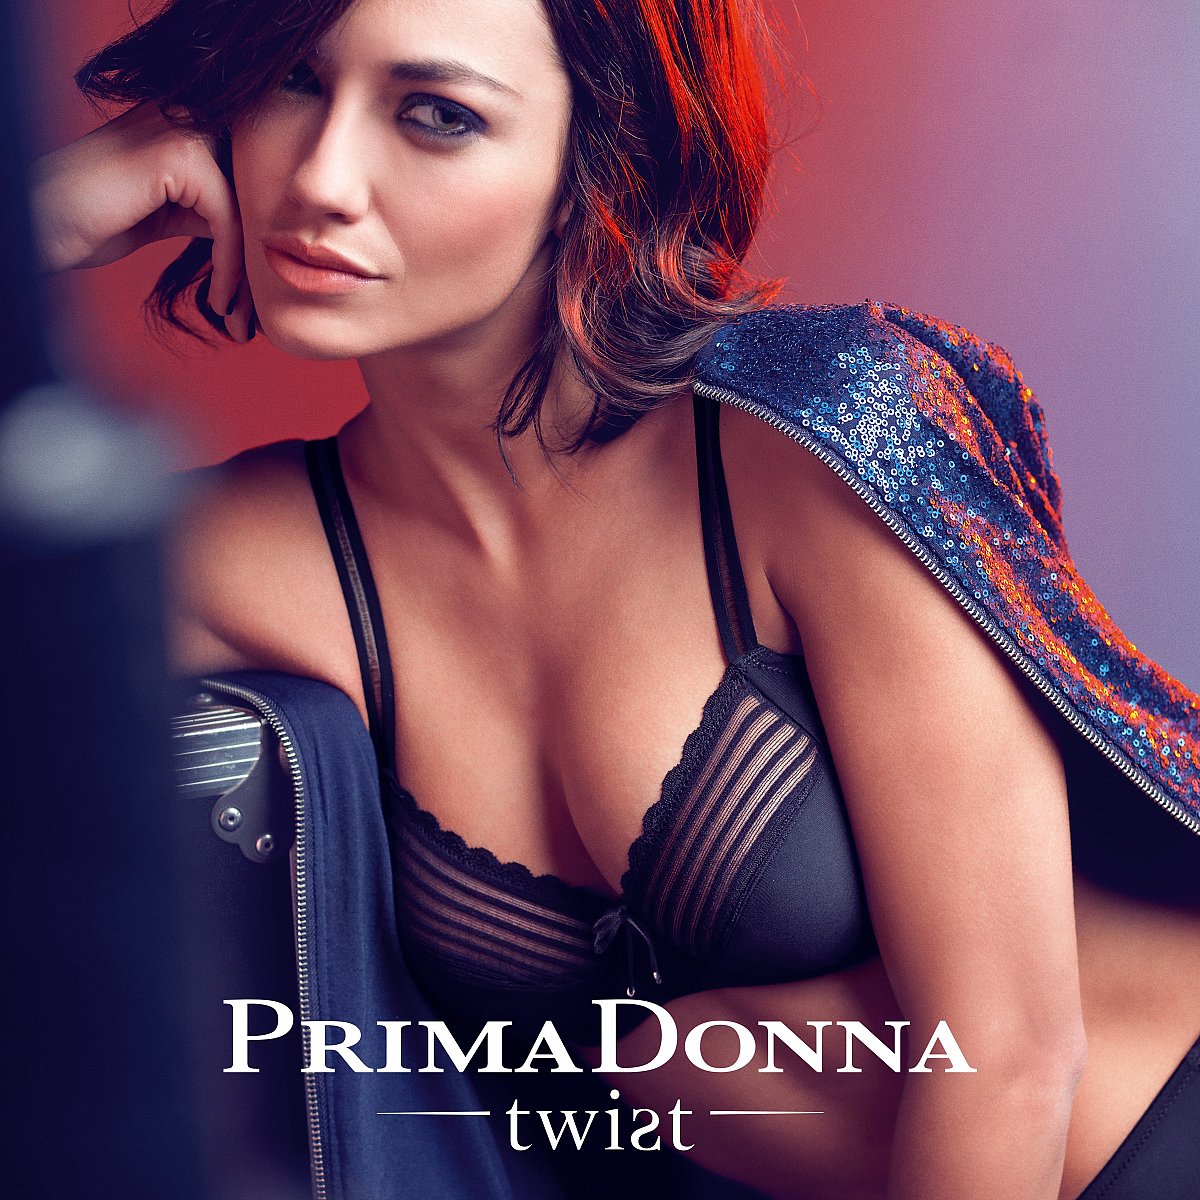 بريمادونا [Primadonna Twist] خريف-شتاء 2015-2016 - الملابس الداخلية - 1